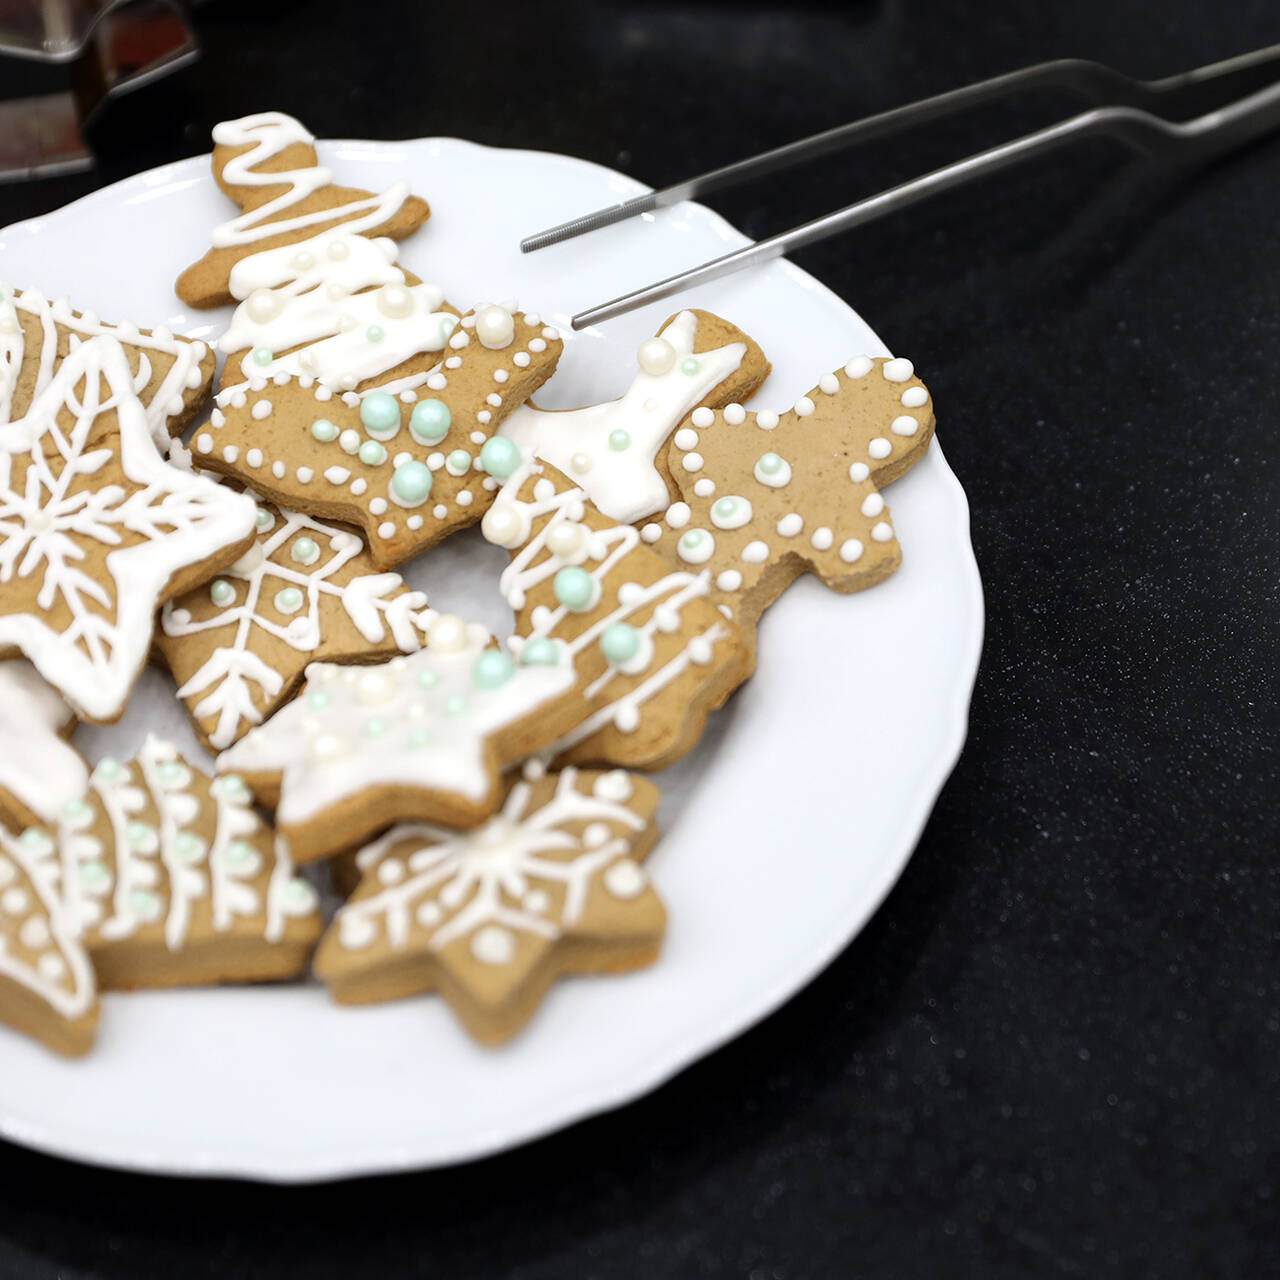 Как приготовить Новогоднее имбирное печенье с ммдемс рецепт пошагово